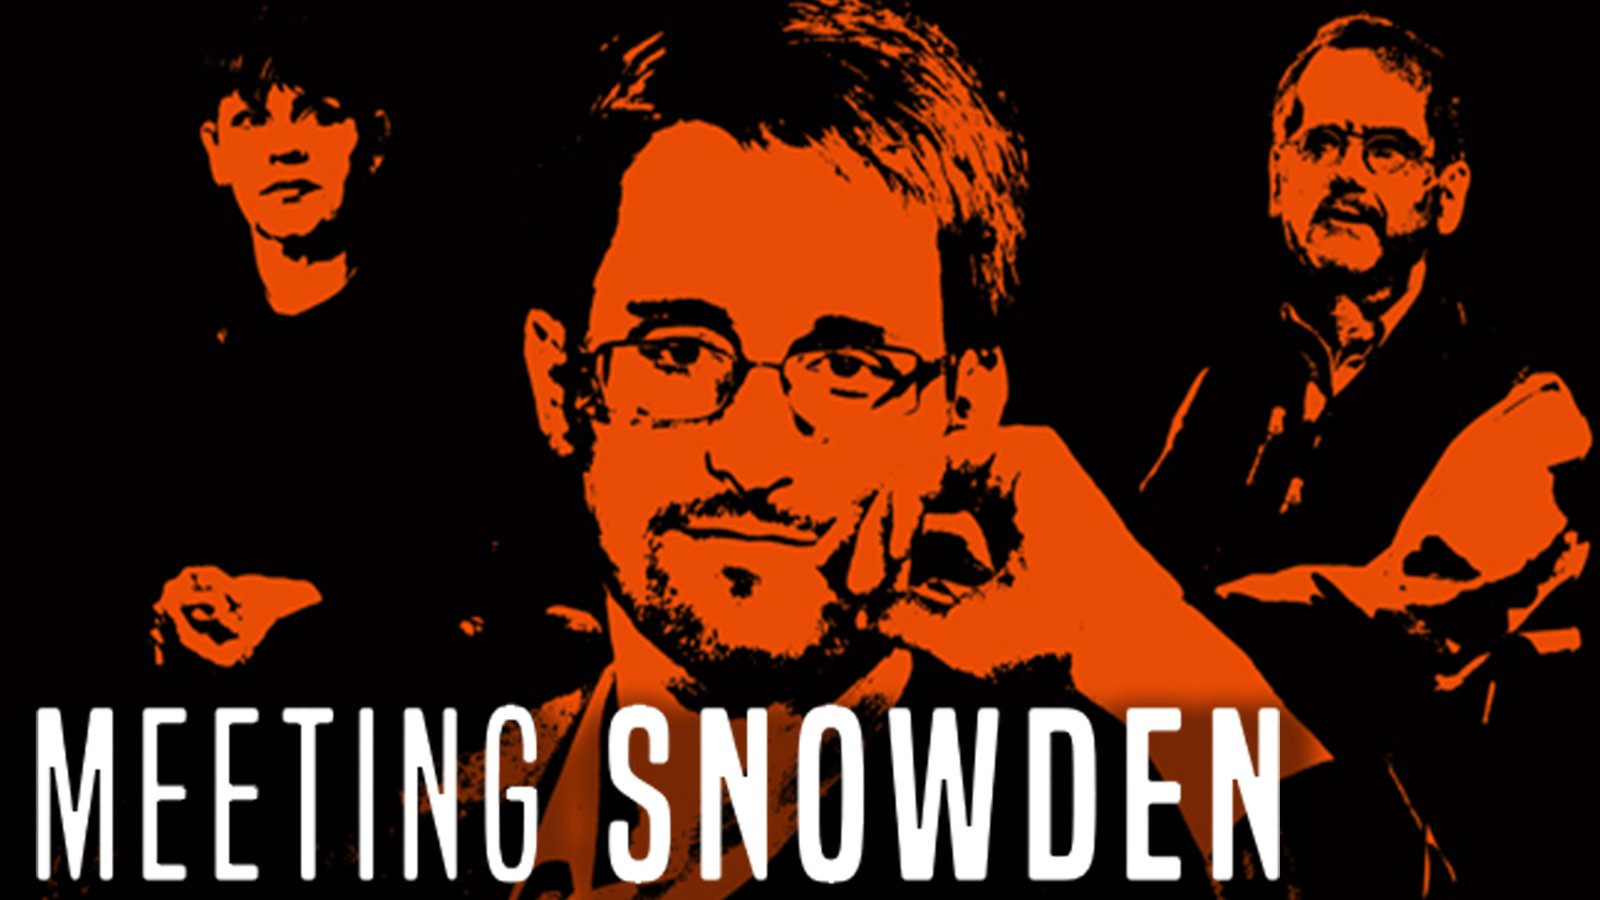 Meeting Snowden